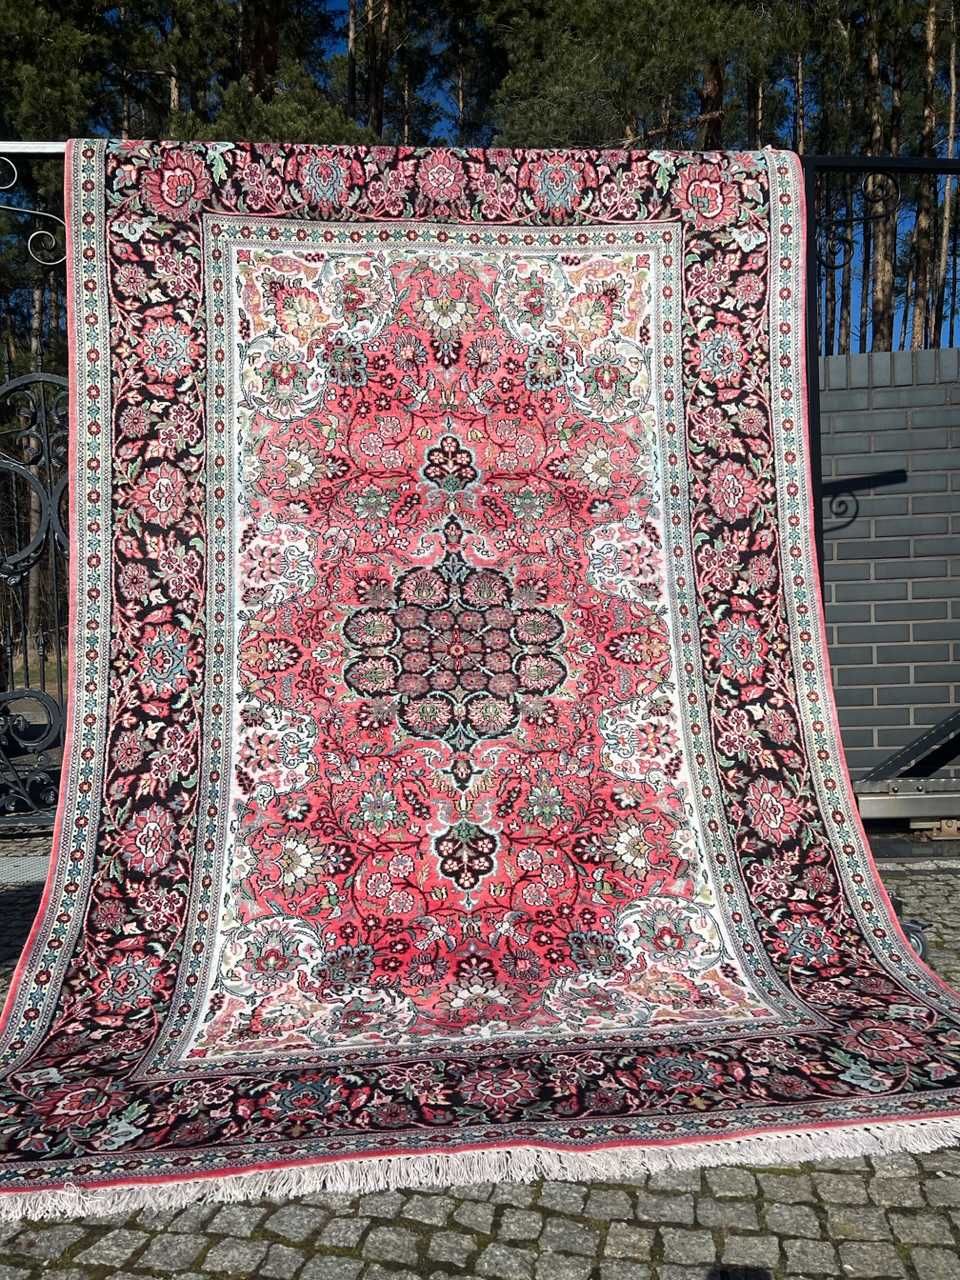 Nowy dywan perski jedwabny Ghoum 275x180 galeria 30 tys